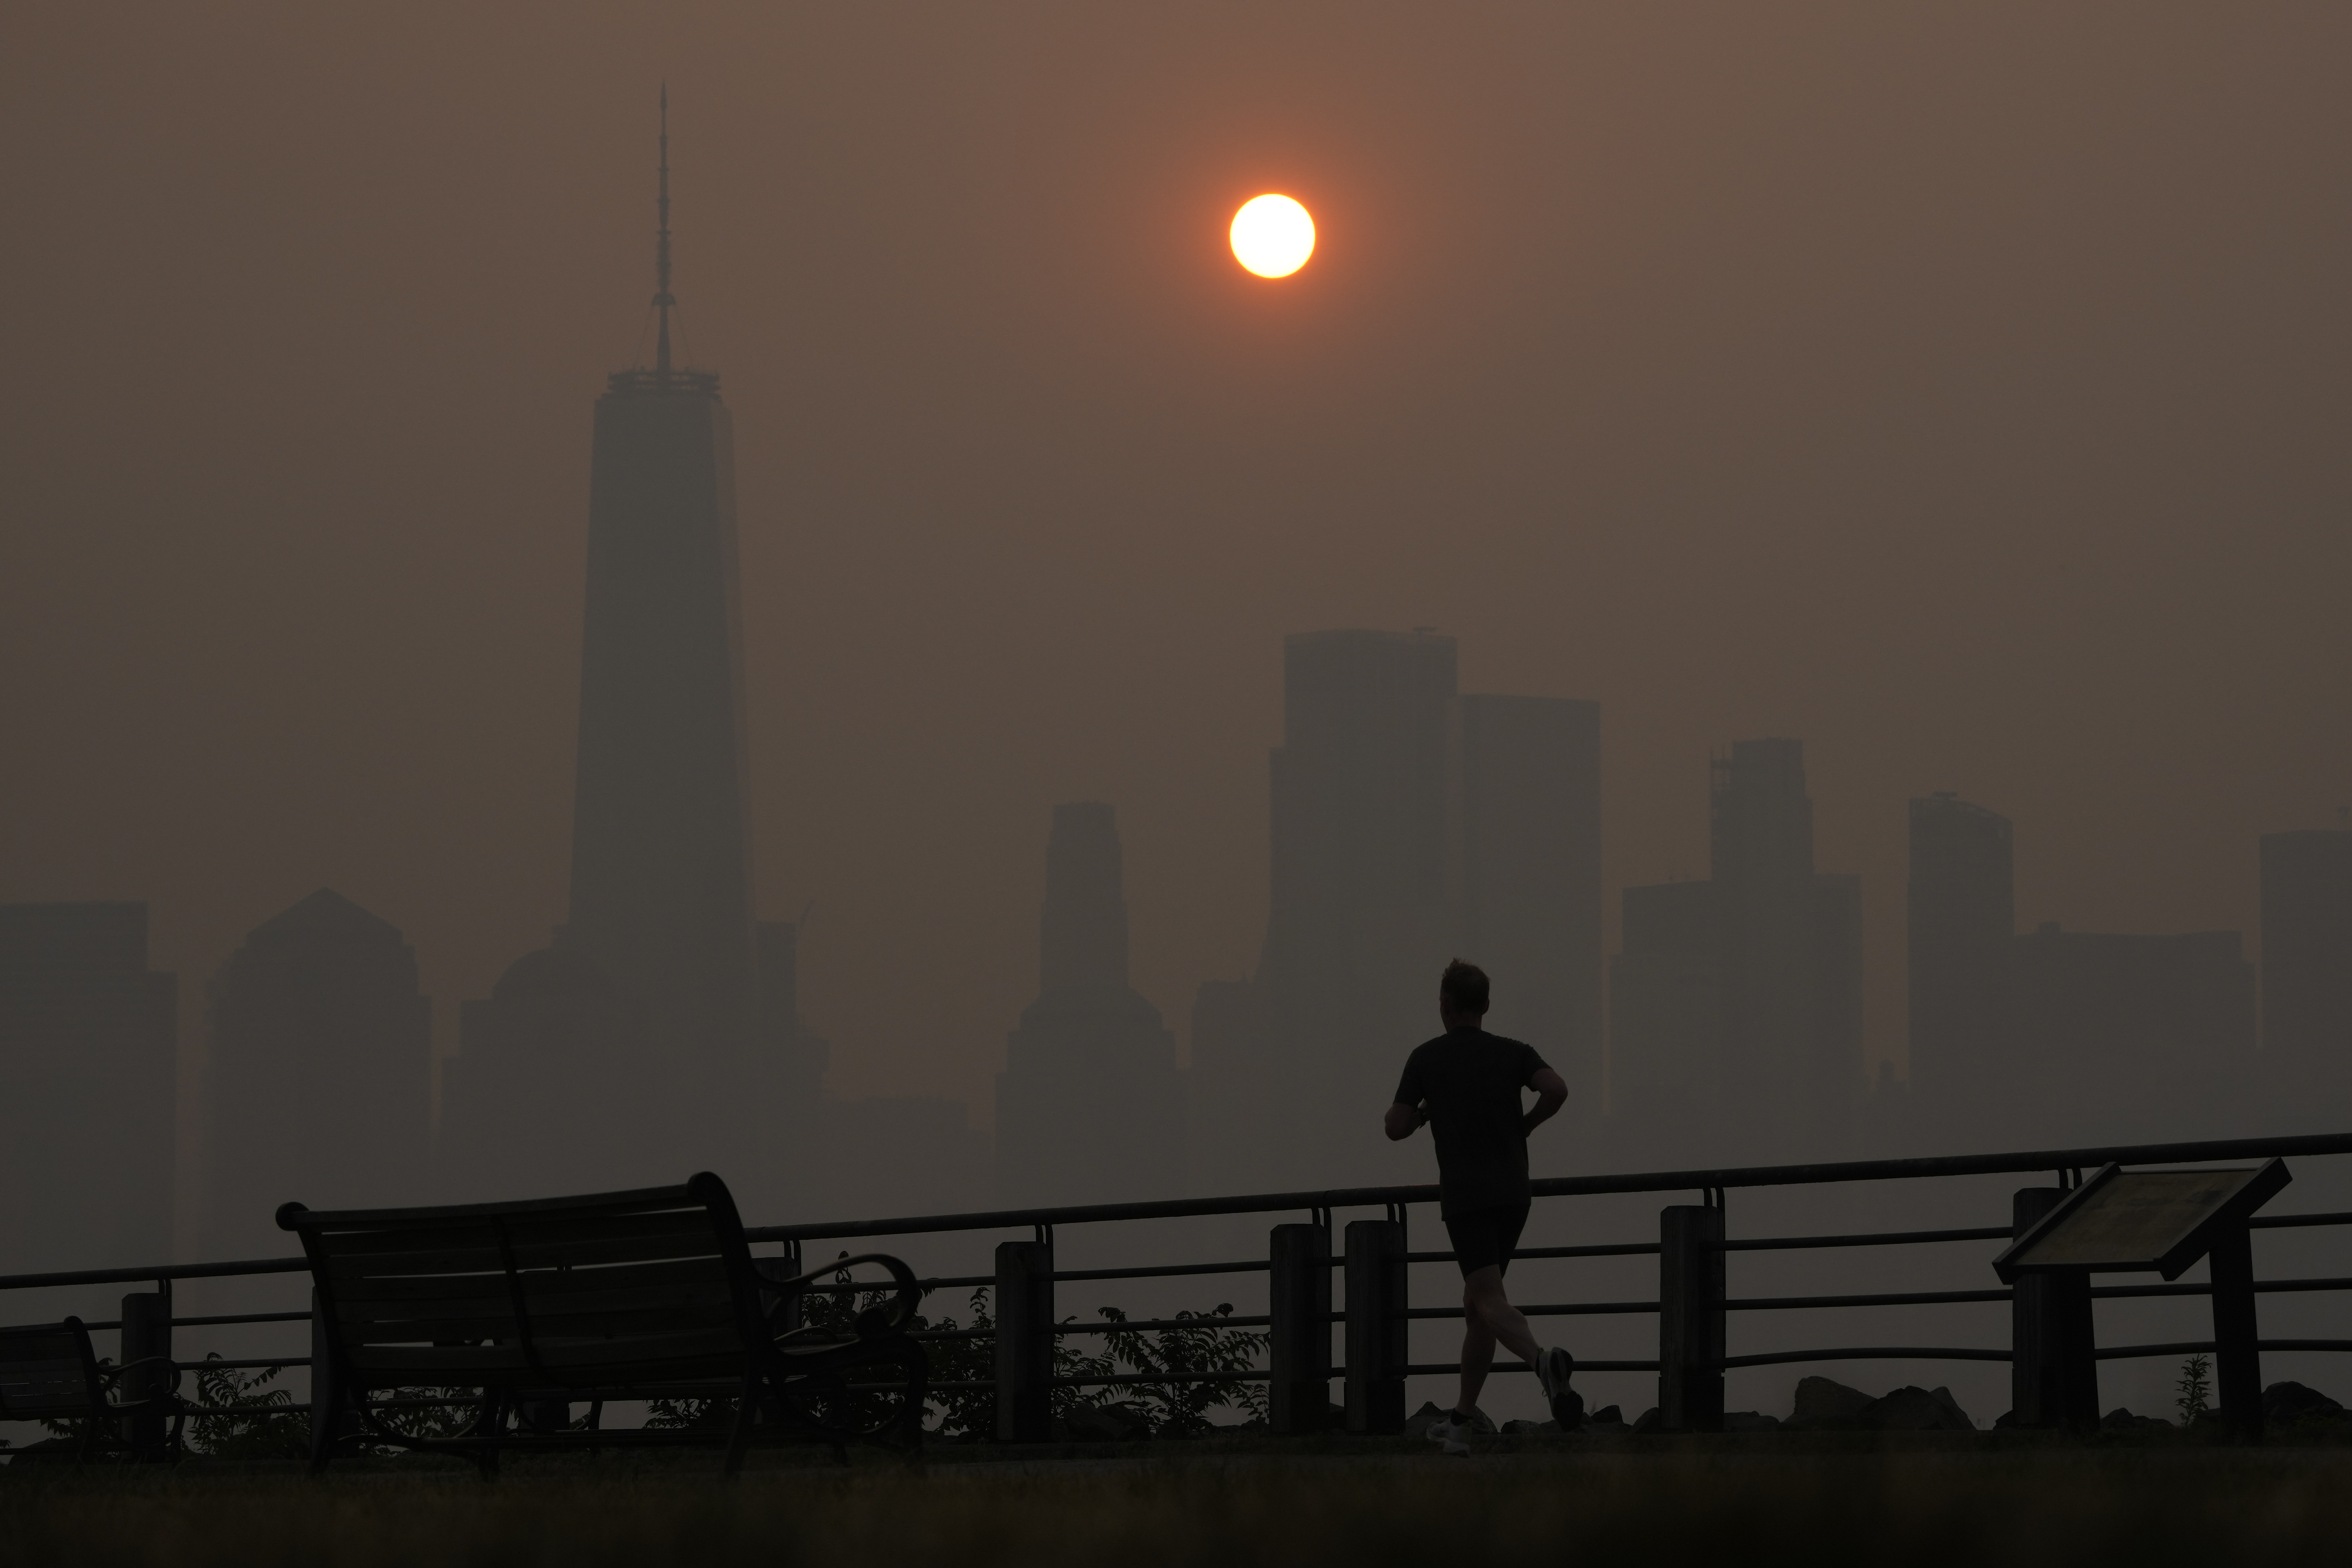 Un hombre corre al amanecer pese al humo este jueves mientras el sol se levanta sobre el firmamento de Manhattan (AP)